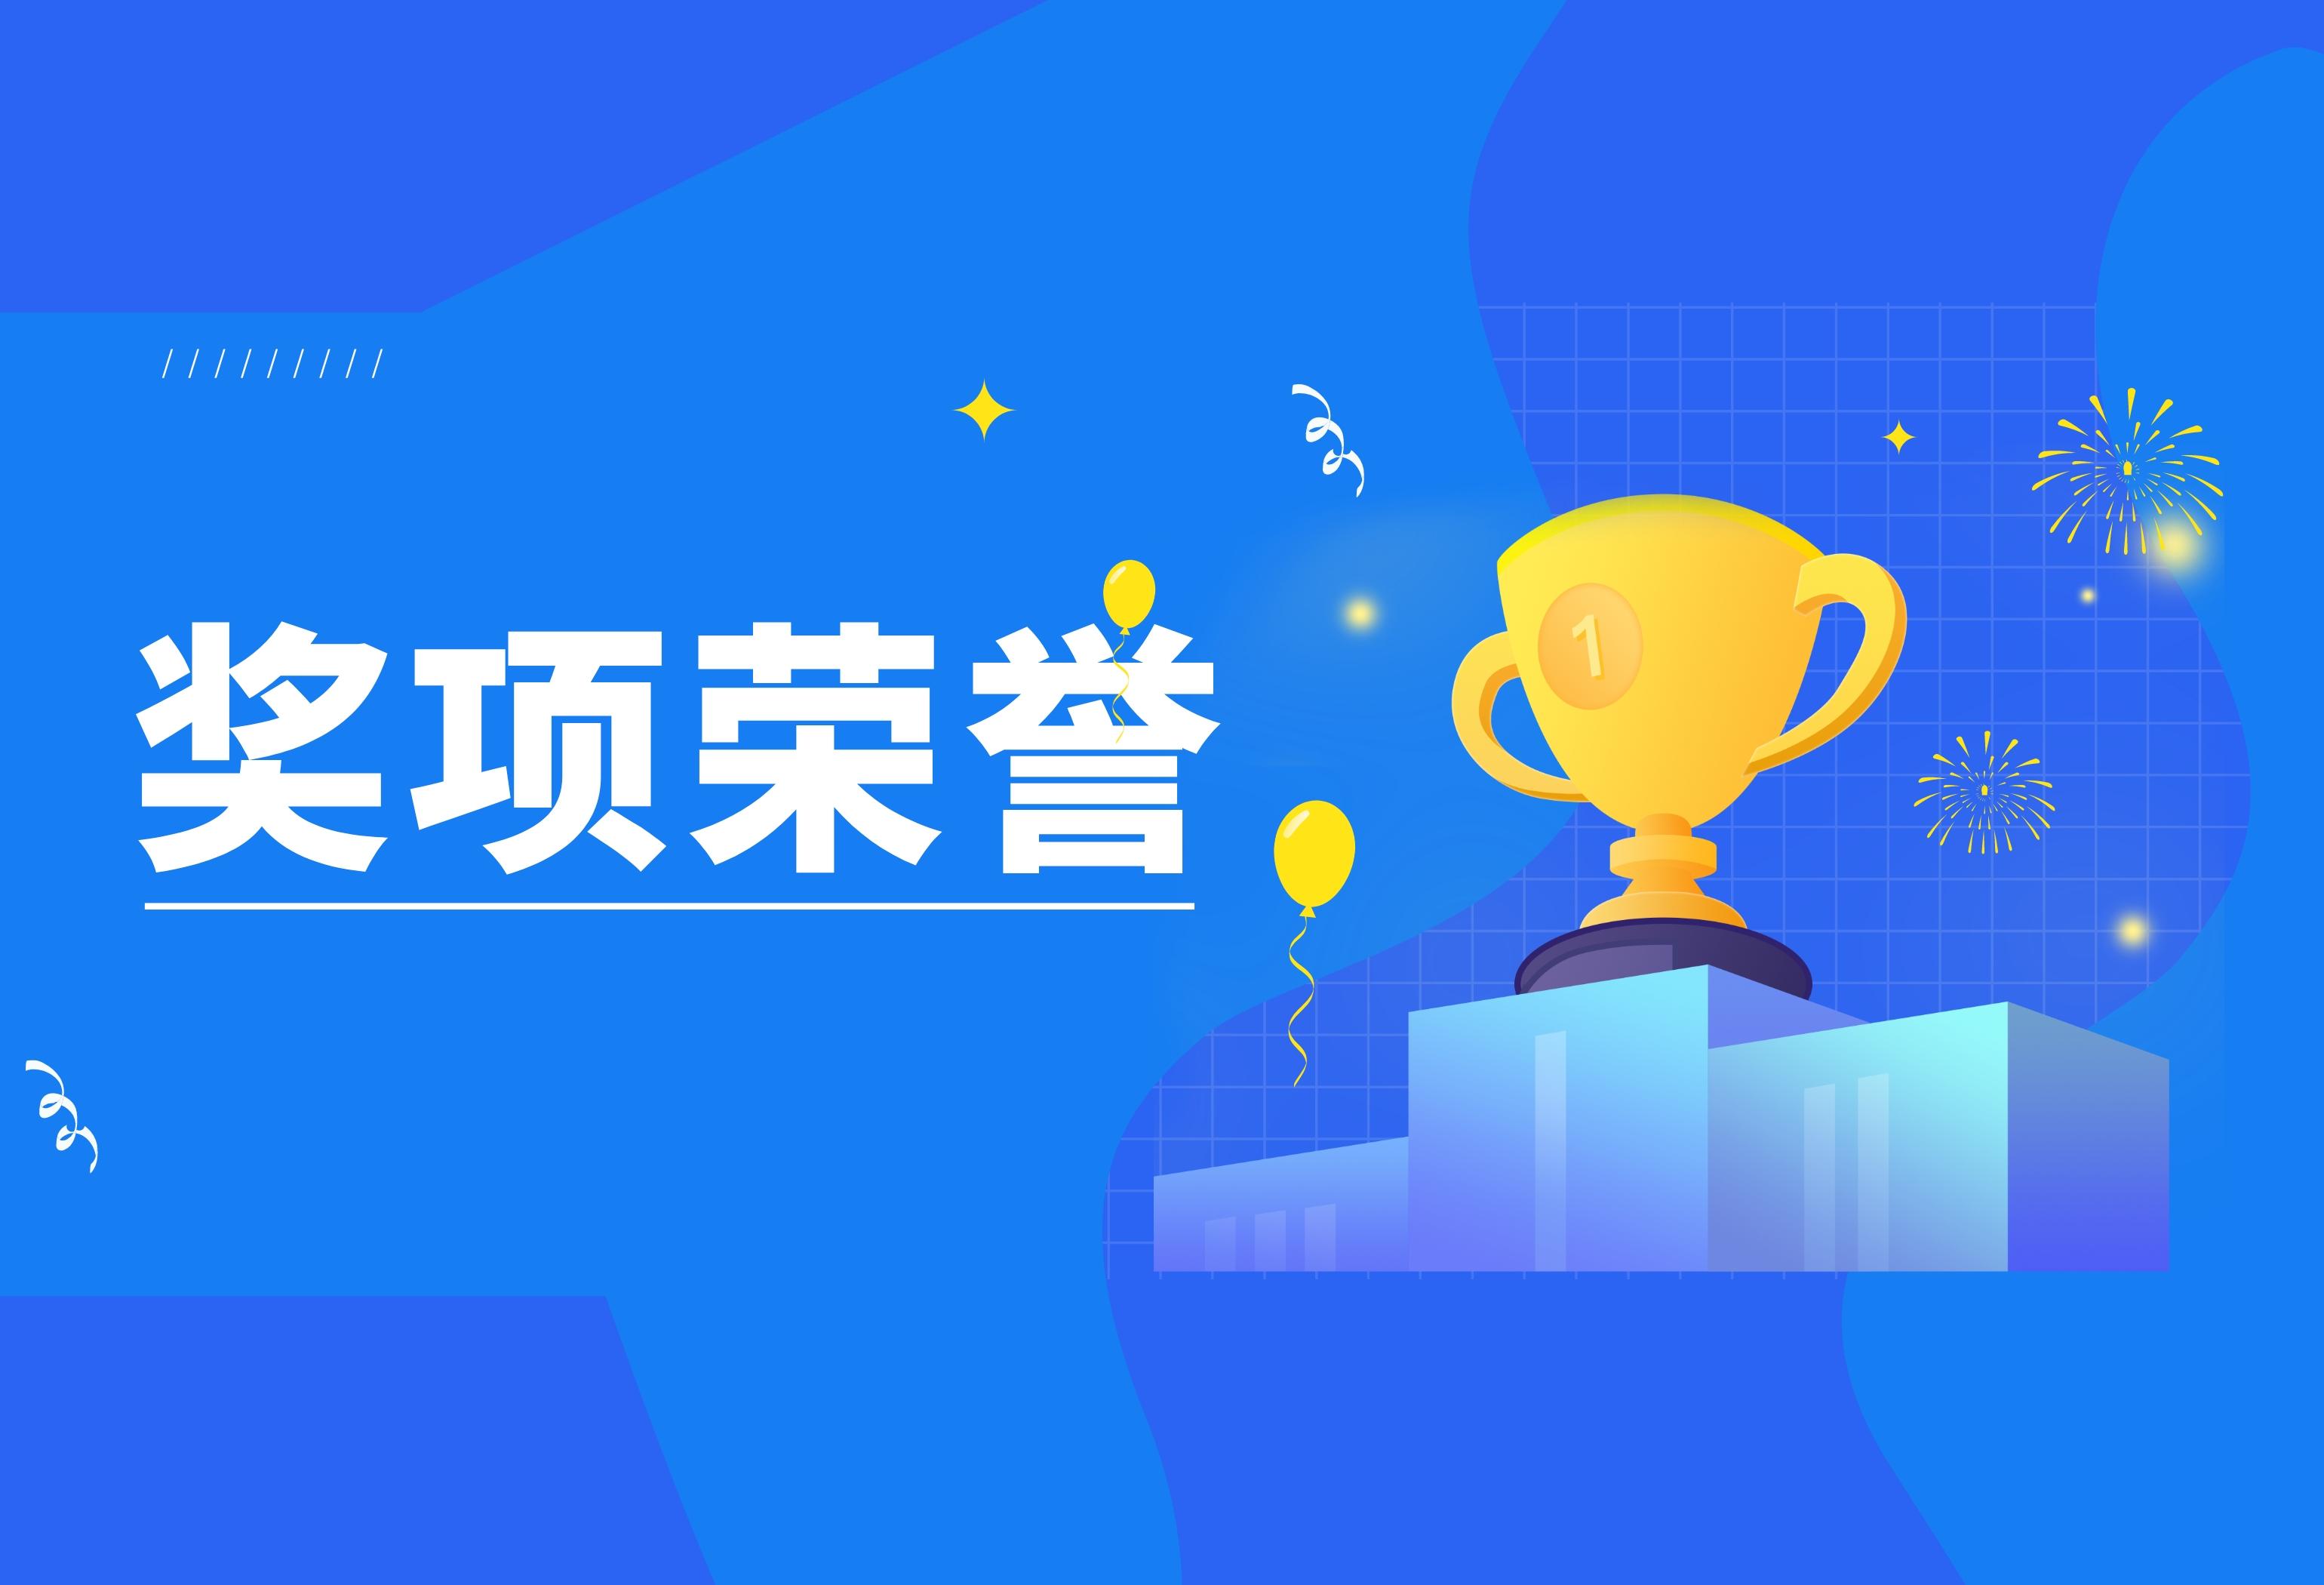 鑫智奖 | Datablau荣获数据治理与数据平台创新优秀解决方案